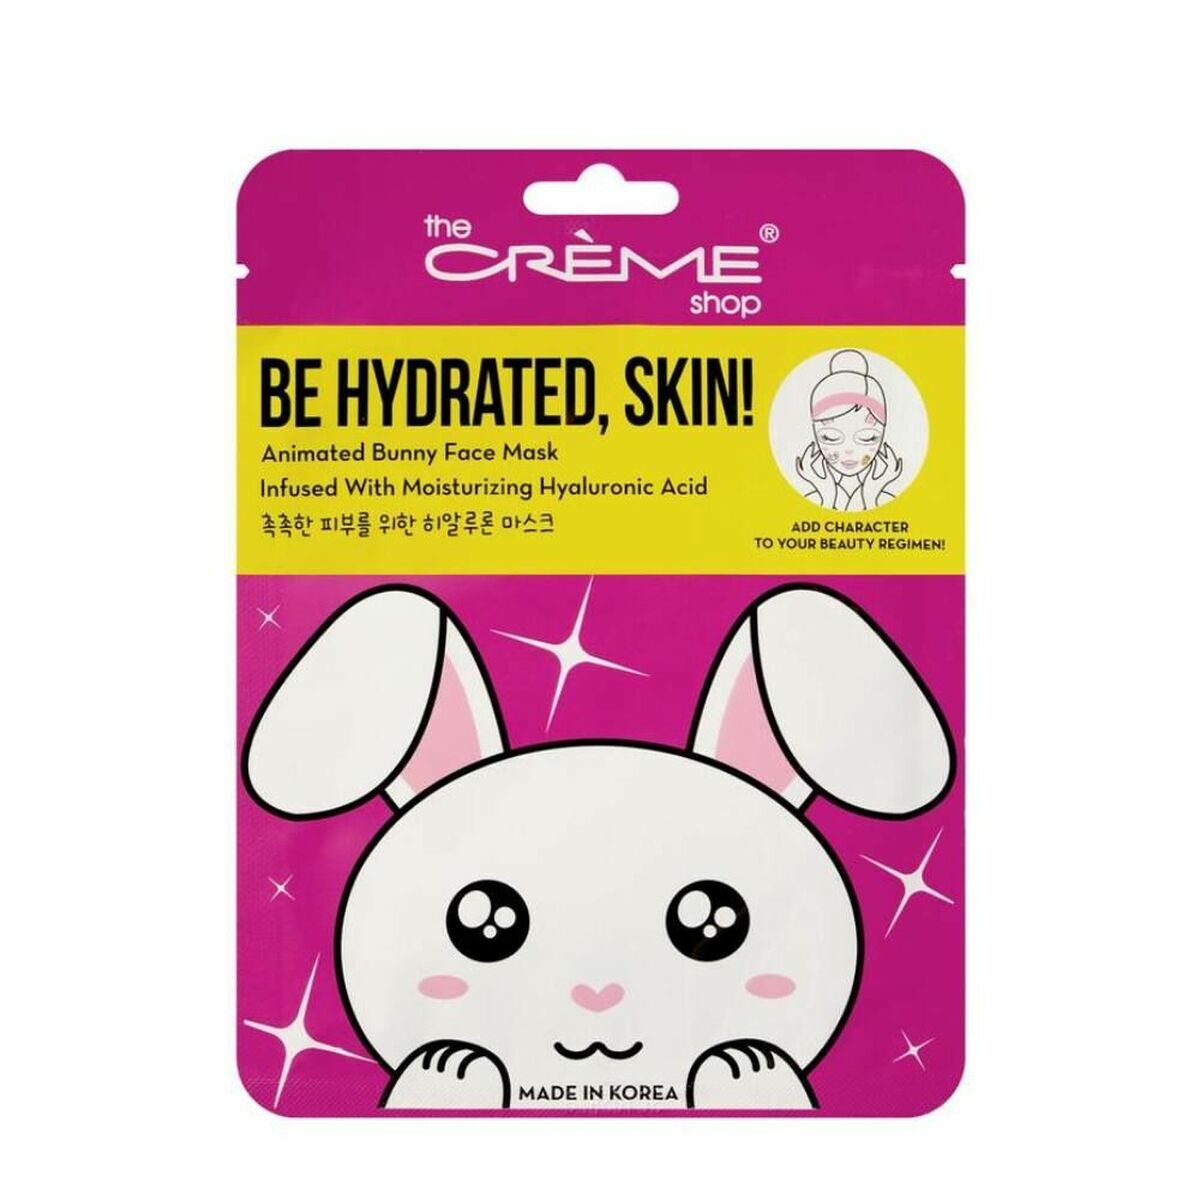 Gesichtsmaske Der Crème -Shop ist hydratisiert, Haut! Hasen (25 g)